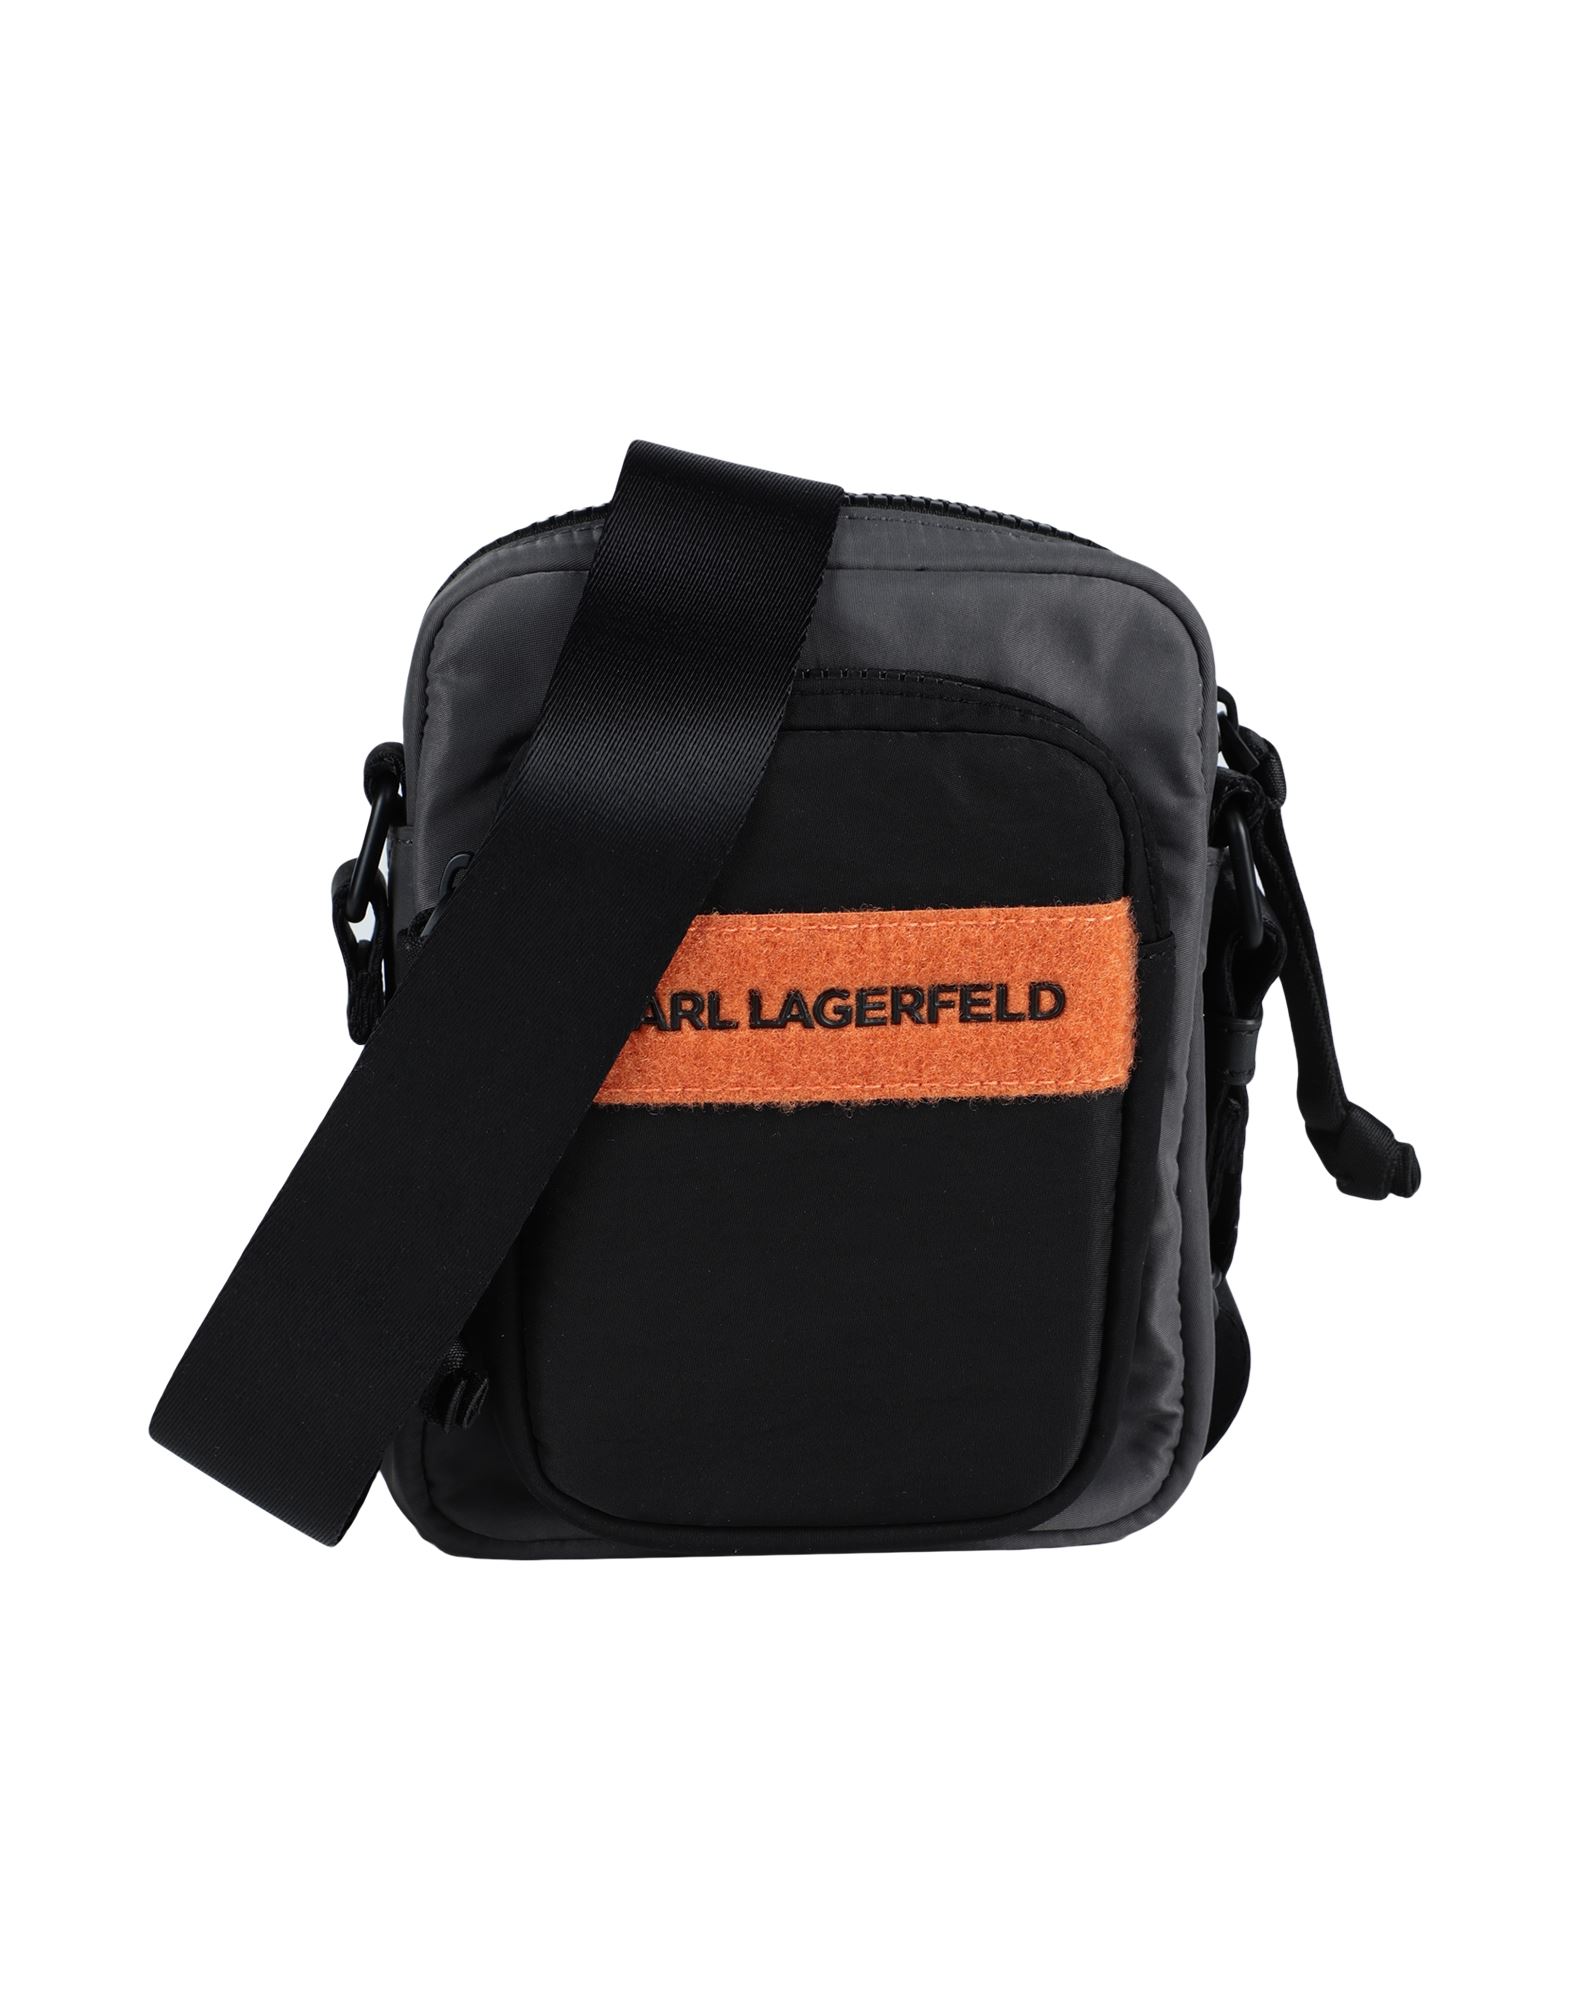 Karl Lagerfeld Handbags In Lead